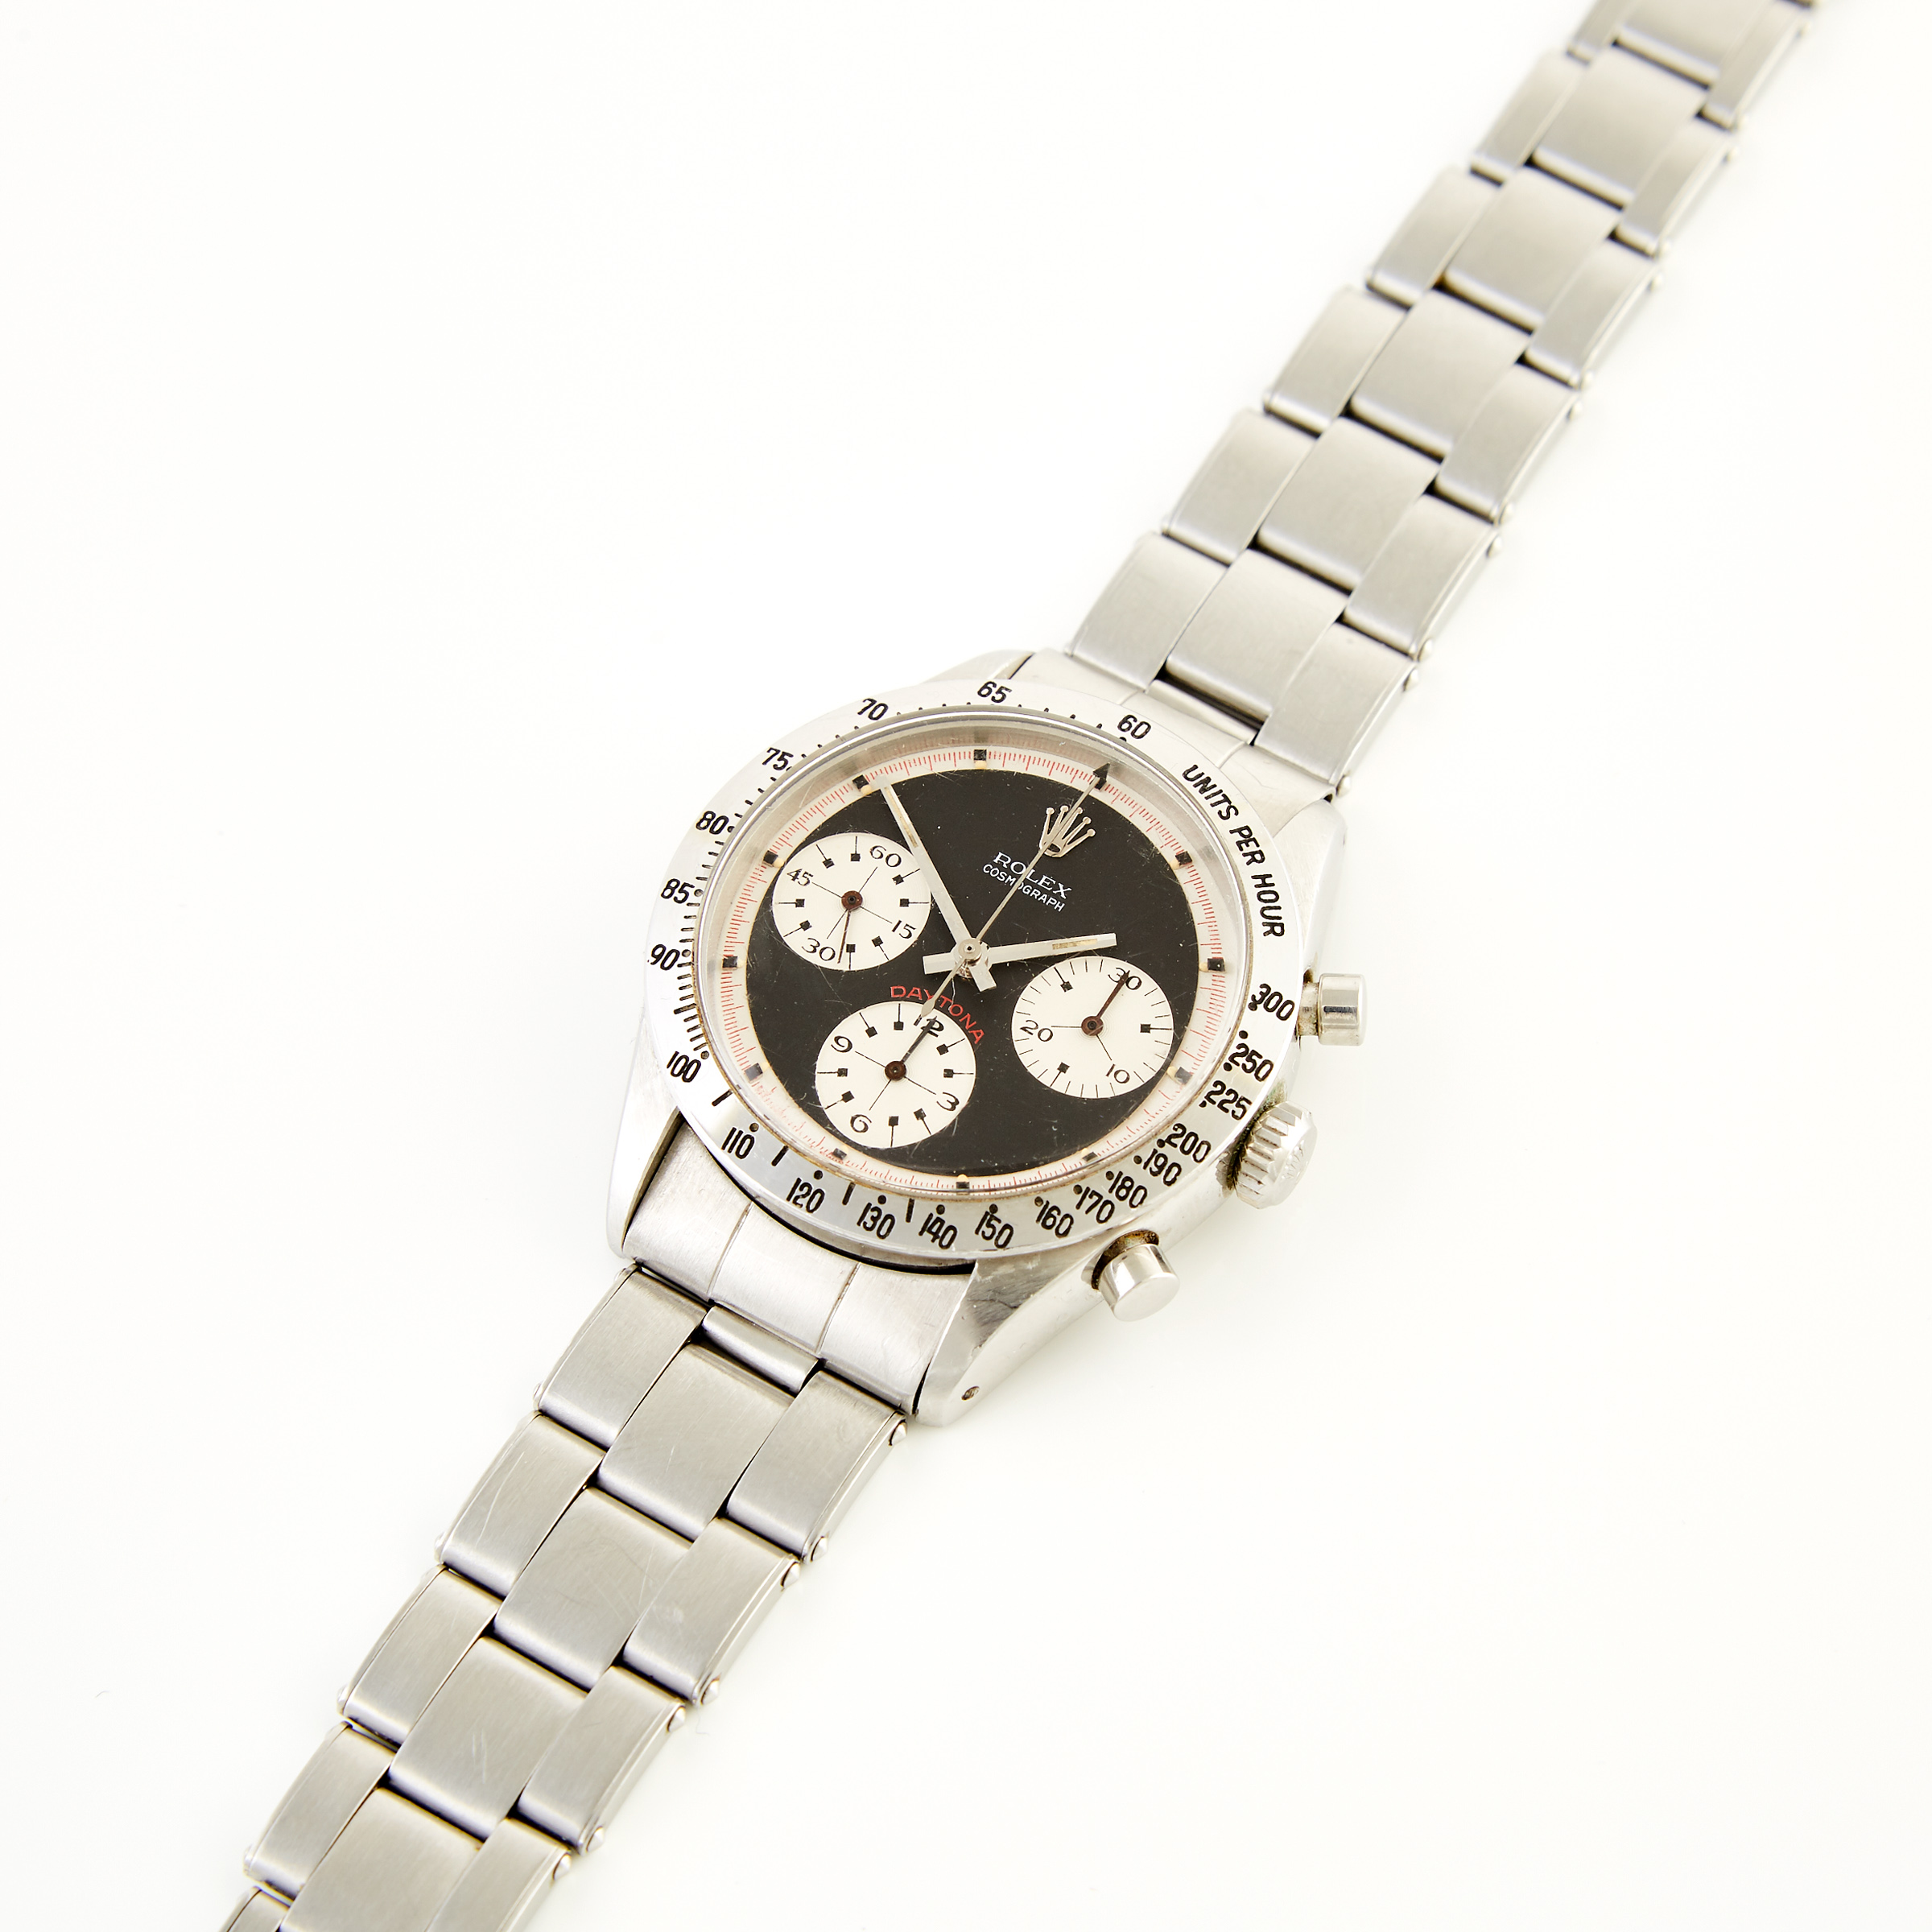 Rolex “Paul Newman” Cosmograph Daytona Wristwatch; “Red Daytona”